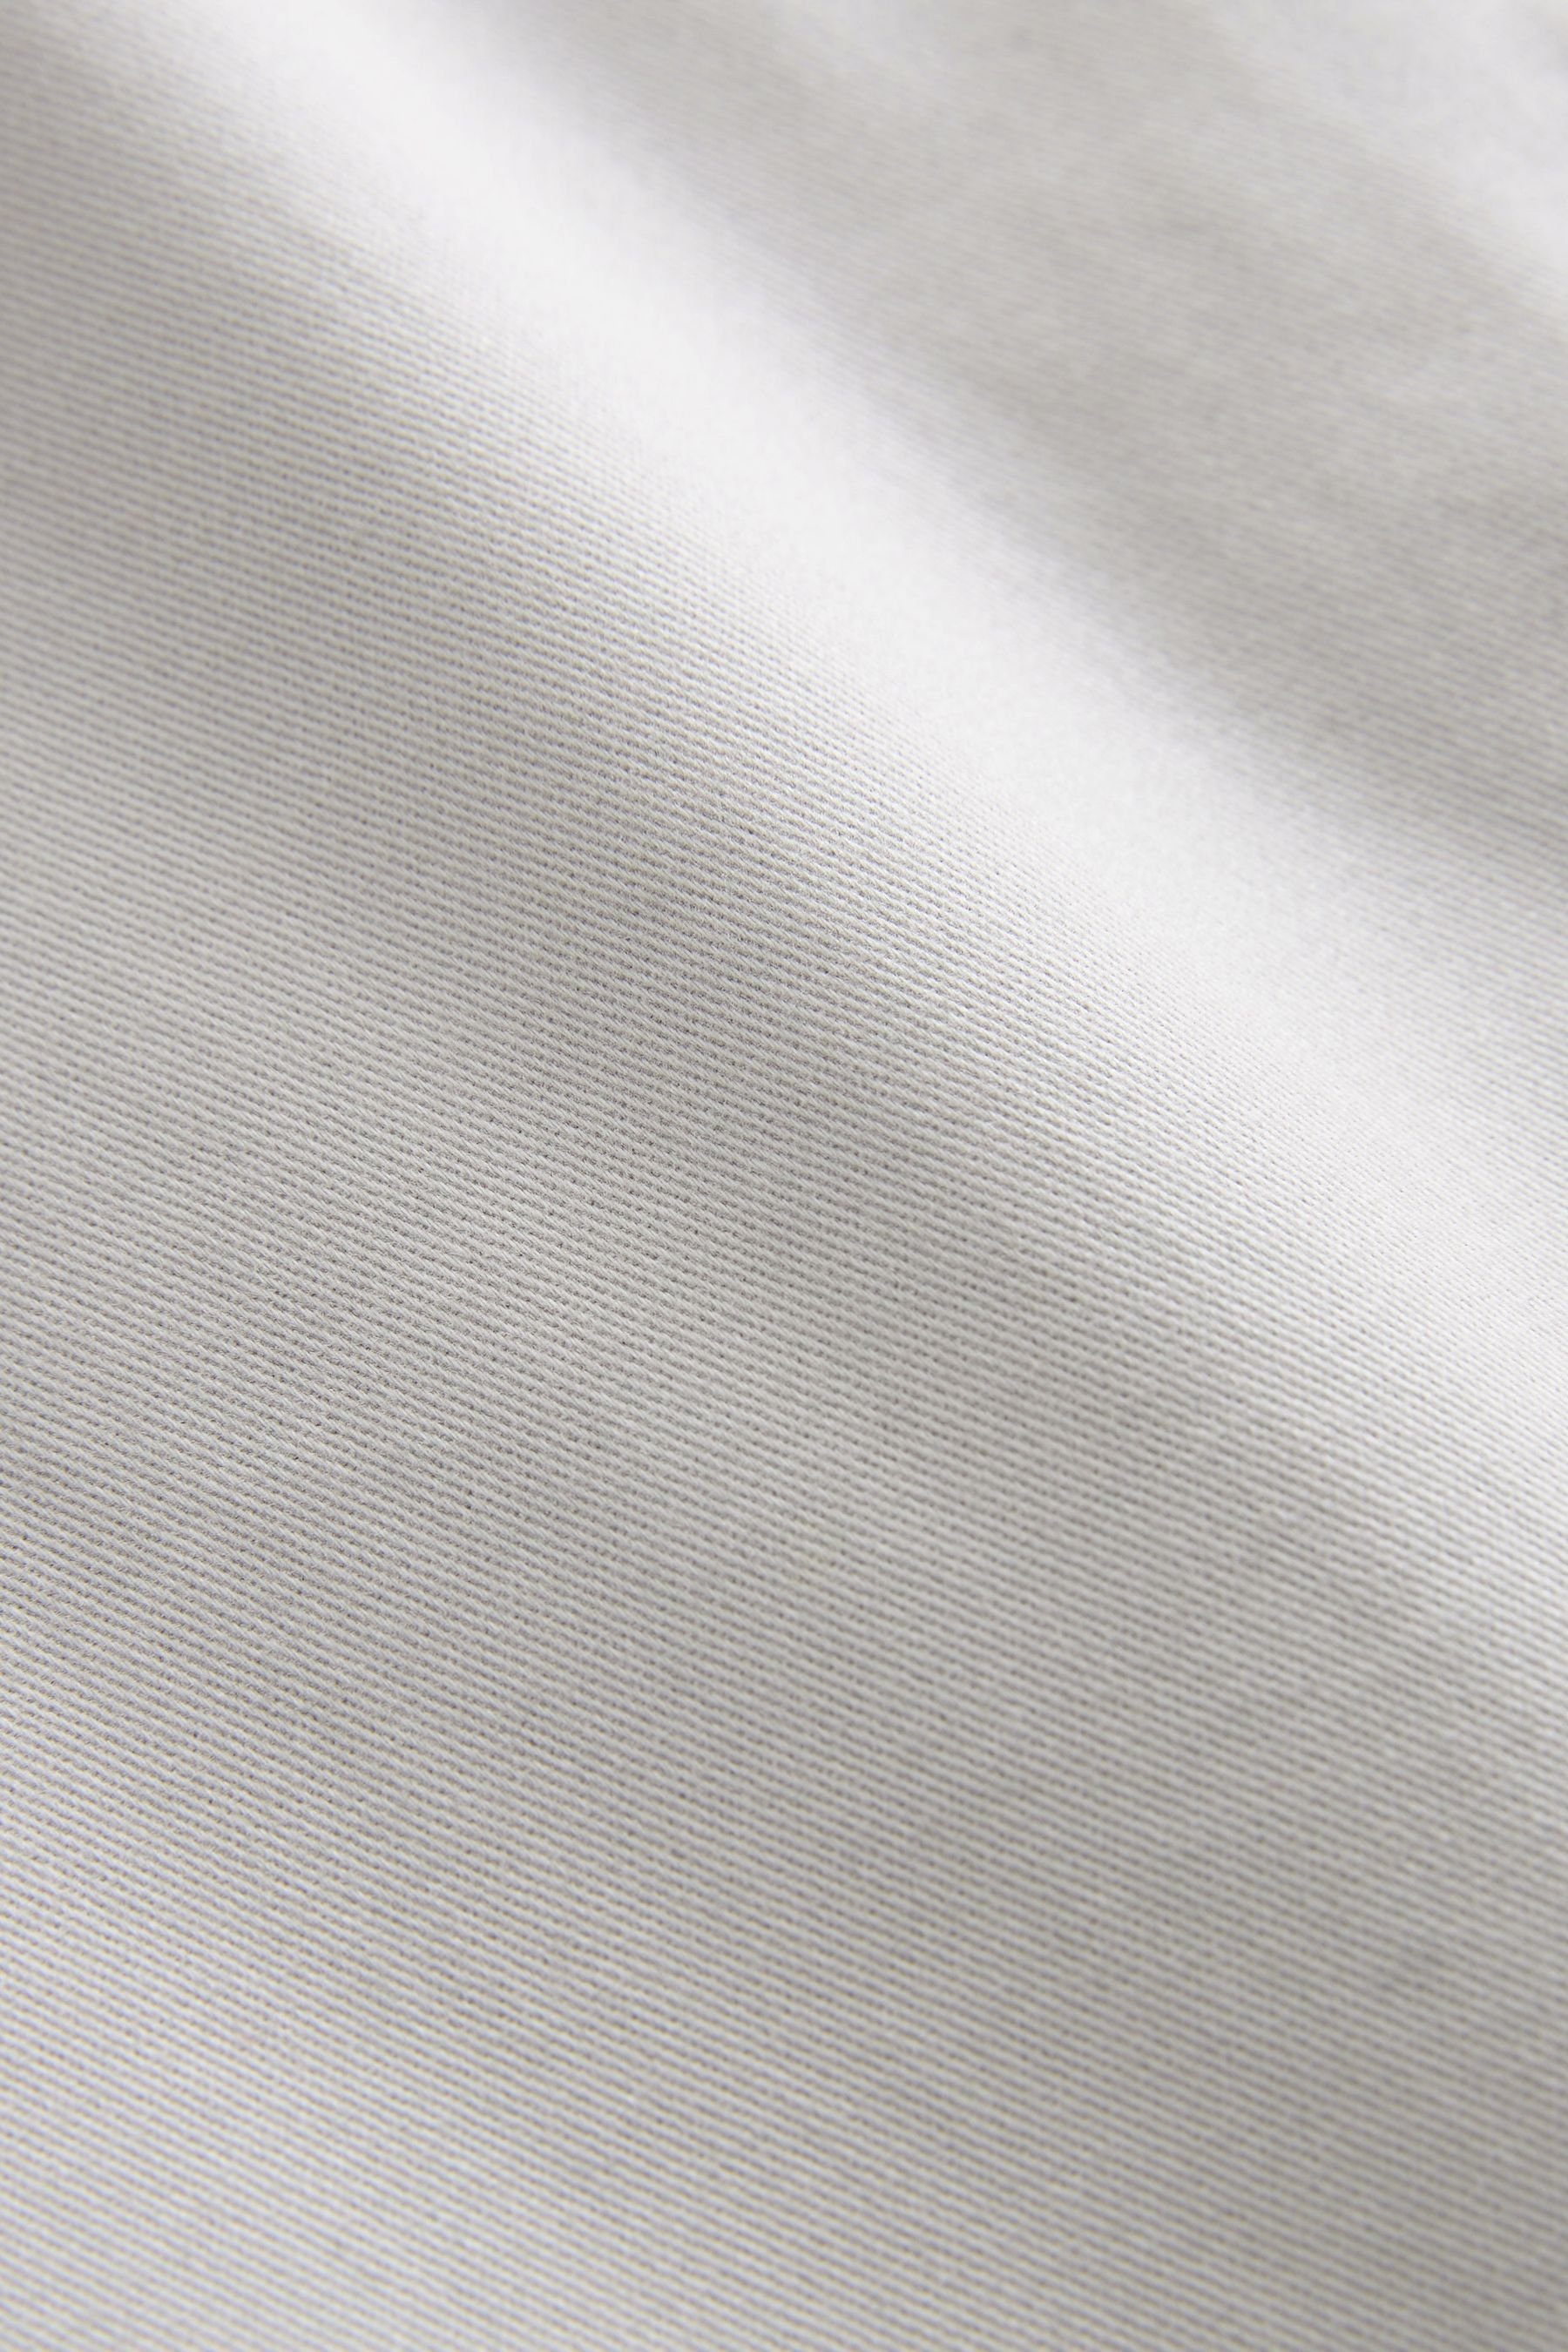 Baumwolle Signature Light Chinoshorts aus Premium Grey Next Chino-Shorts (1-tlg)